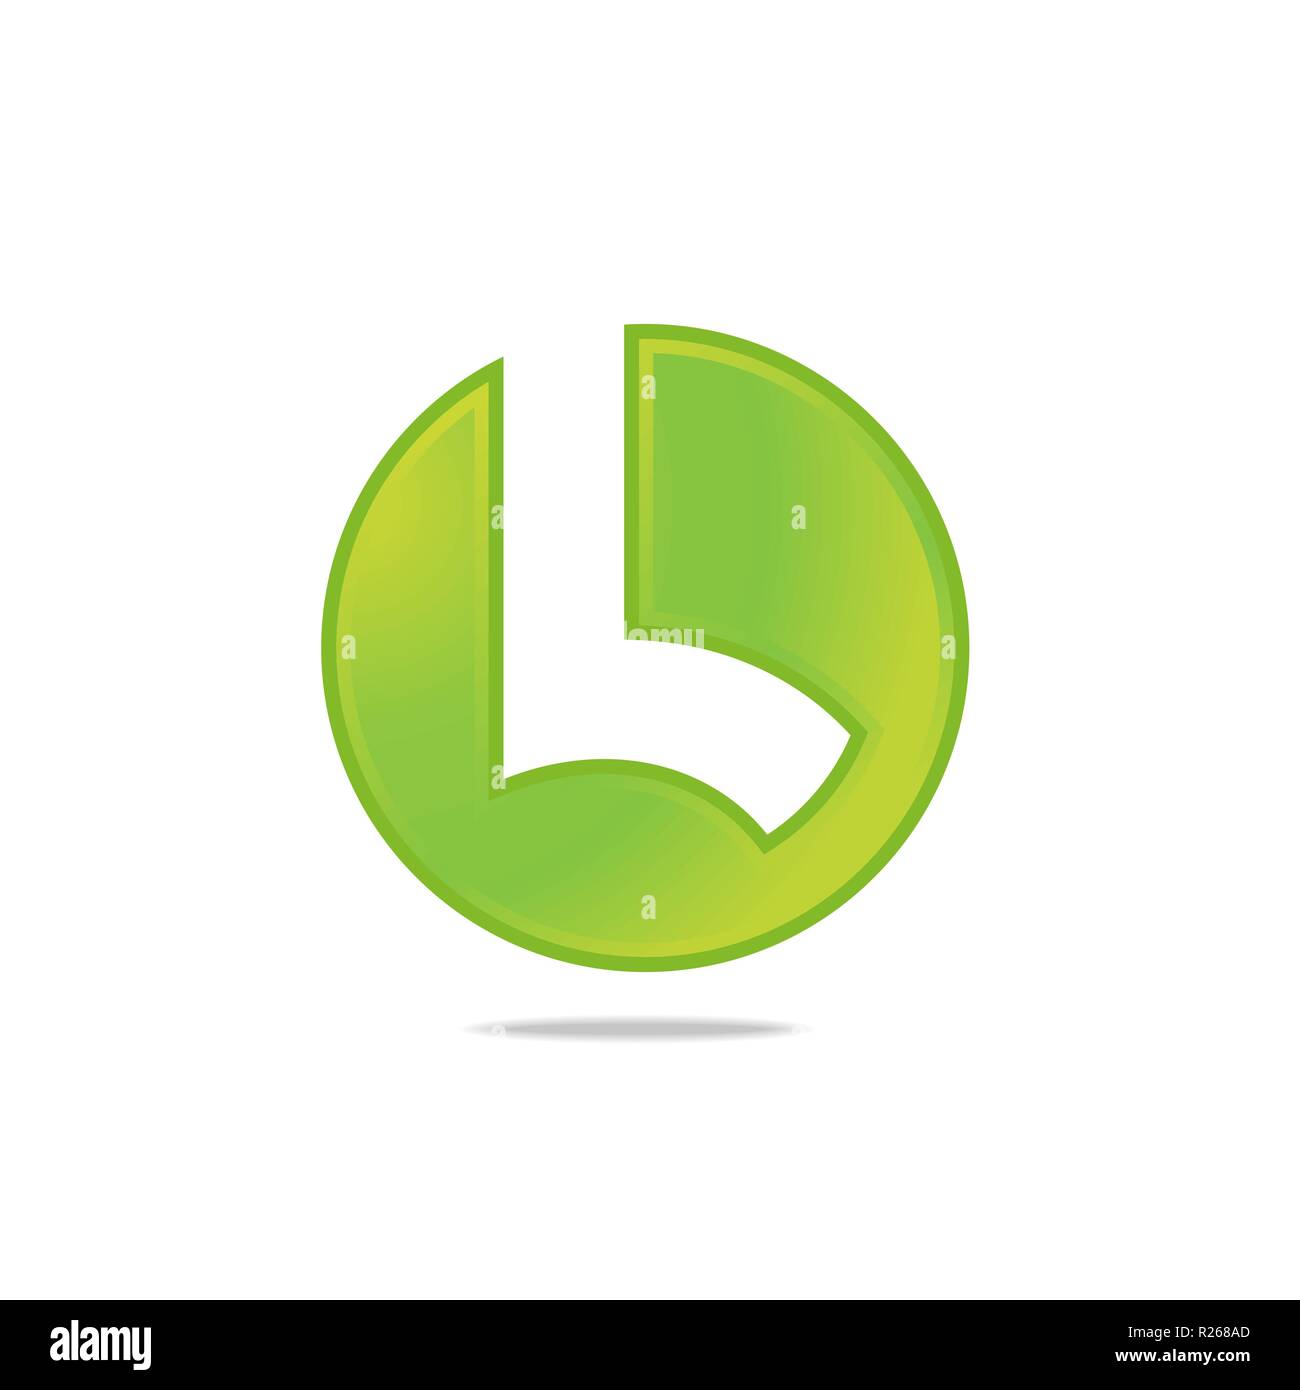 Logo de lettre stylisée L Template. Propre et simple logo modèle, adapté pour une entreprise créative, studio, équipe, etc. 100 % de formes vectorielles y Illustration de Vecteur